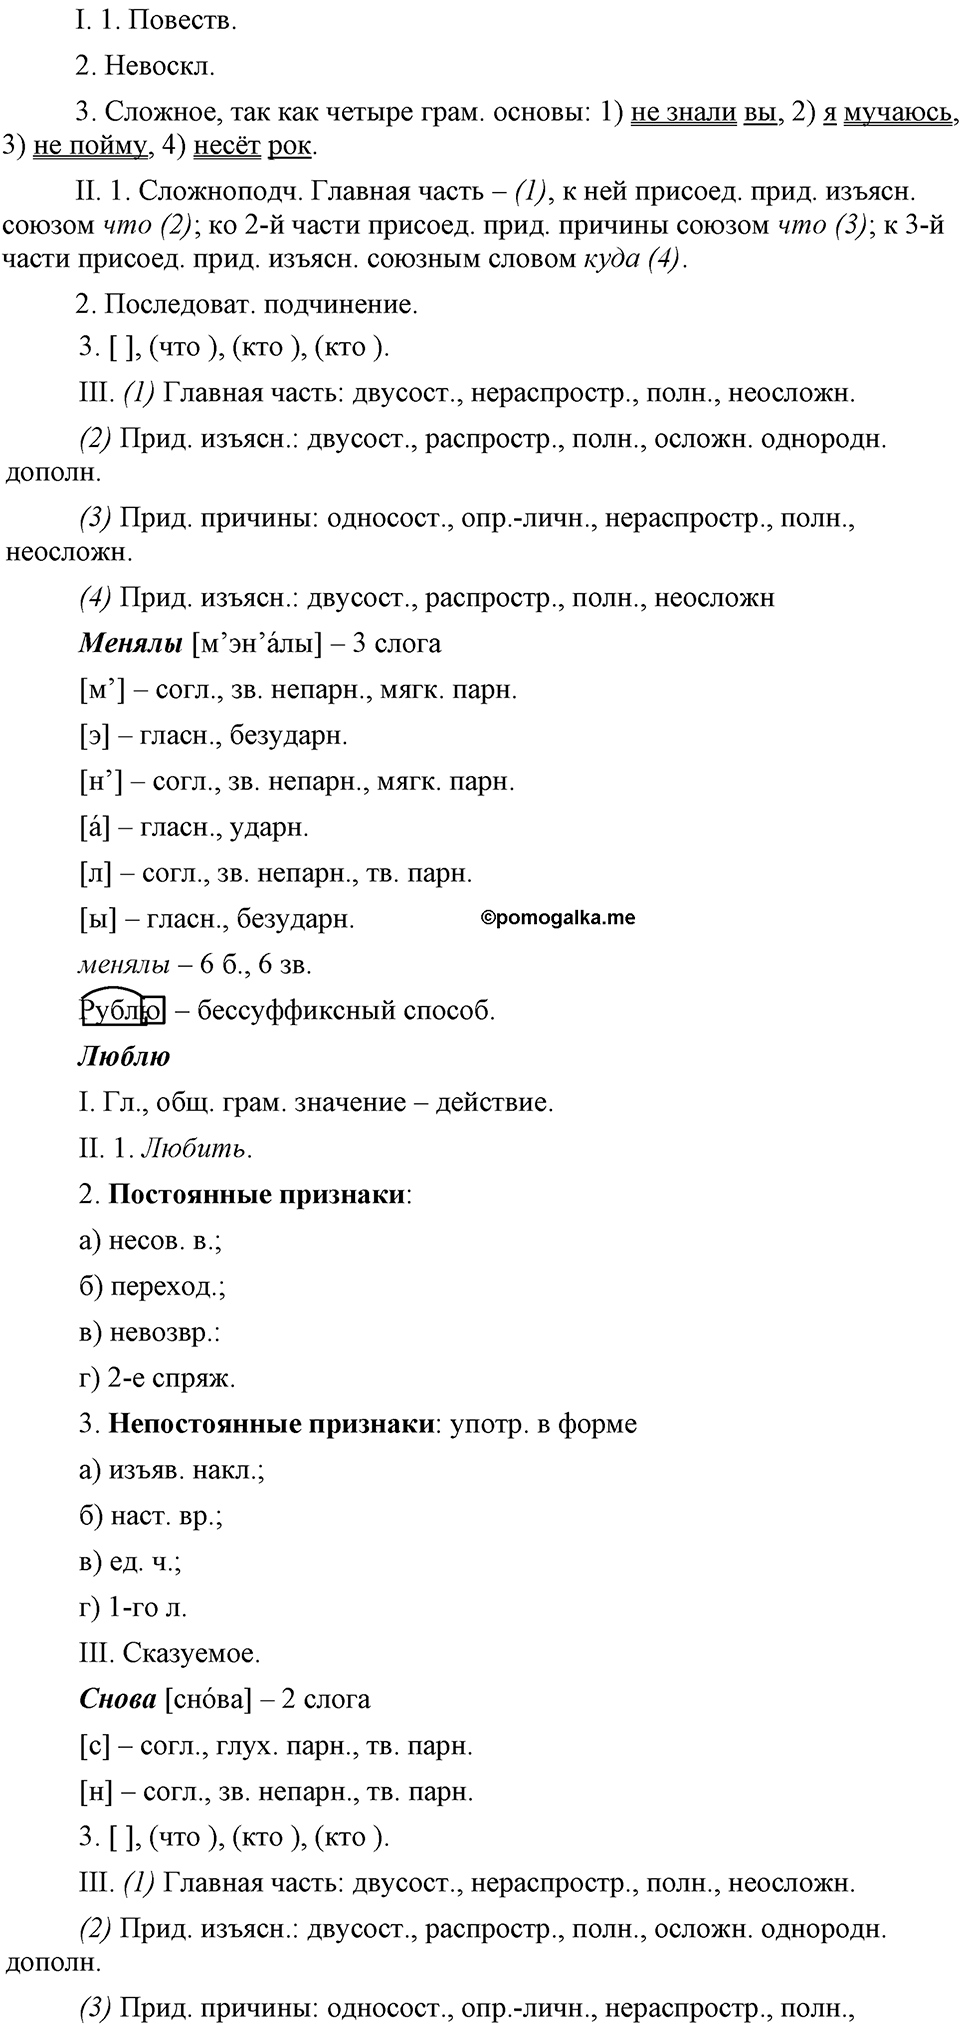 упражнение №200 русский язык 9 класс Бархударов